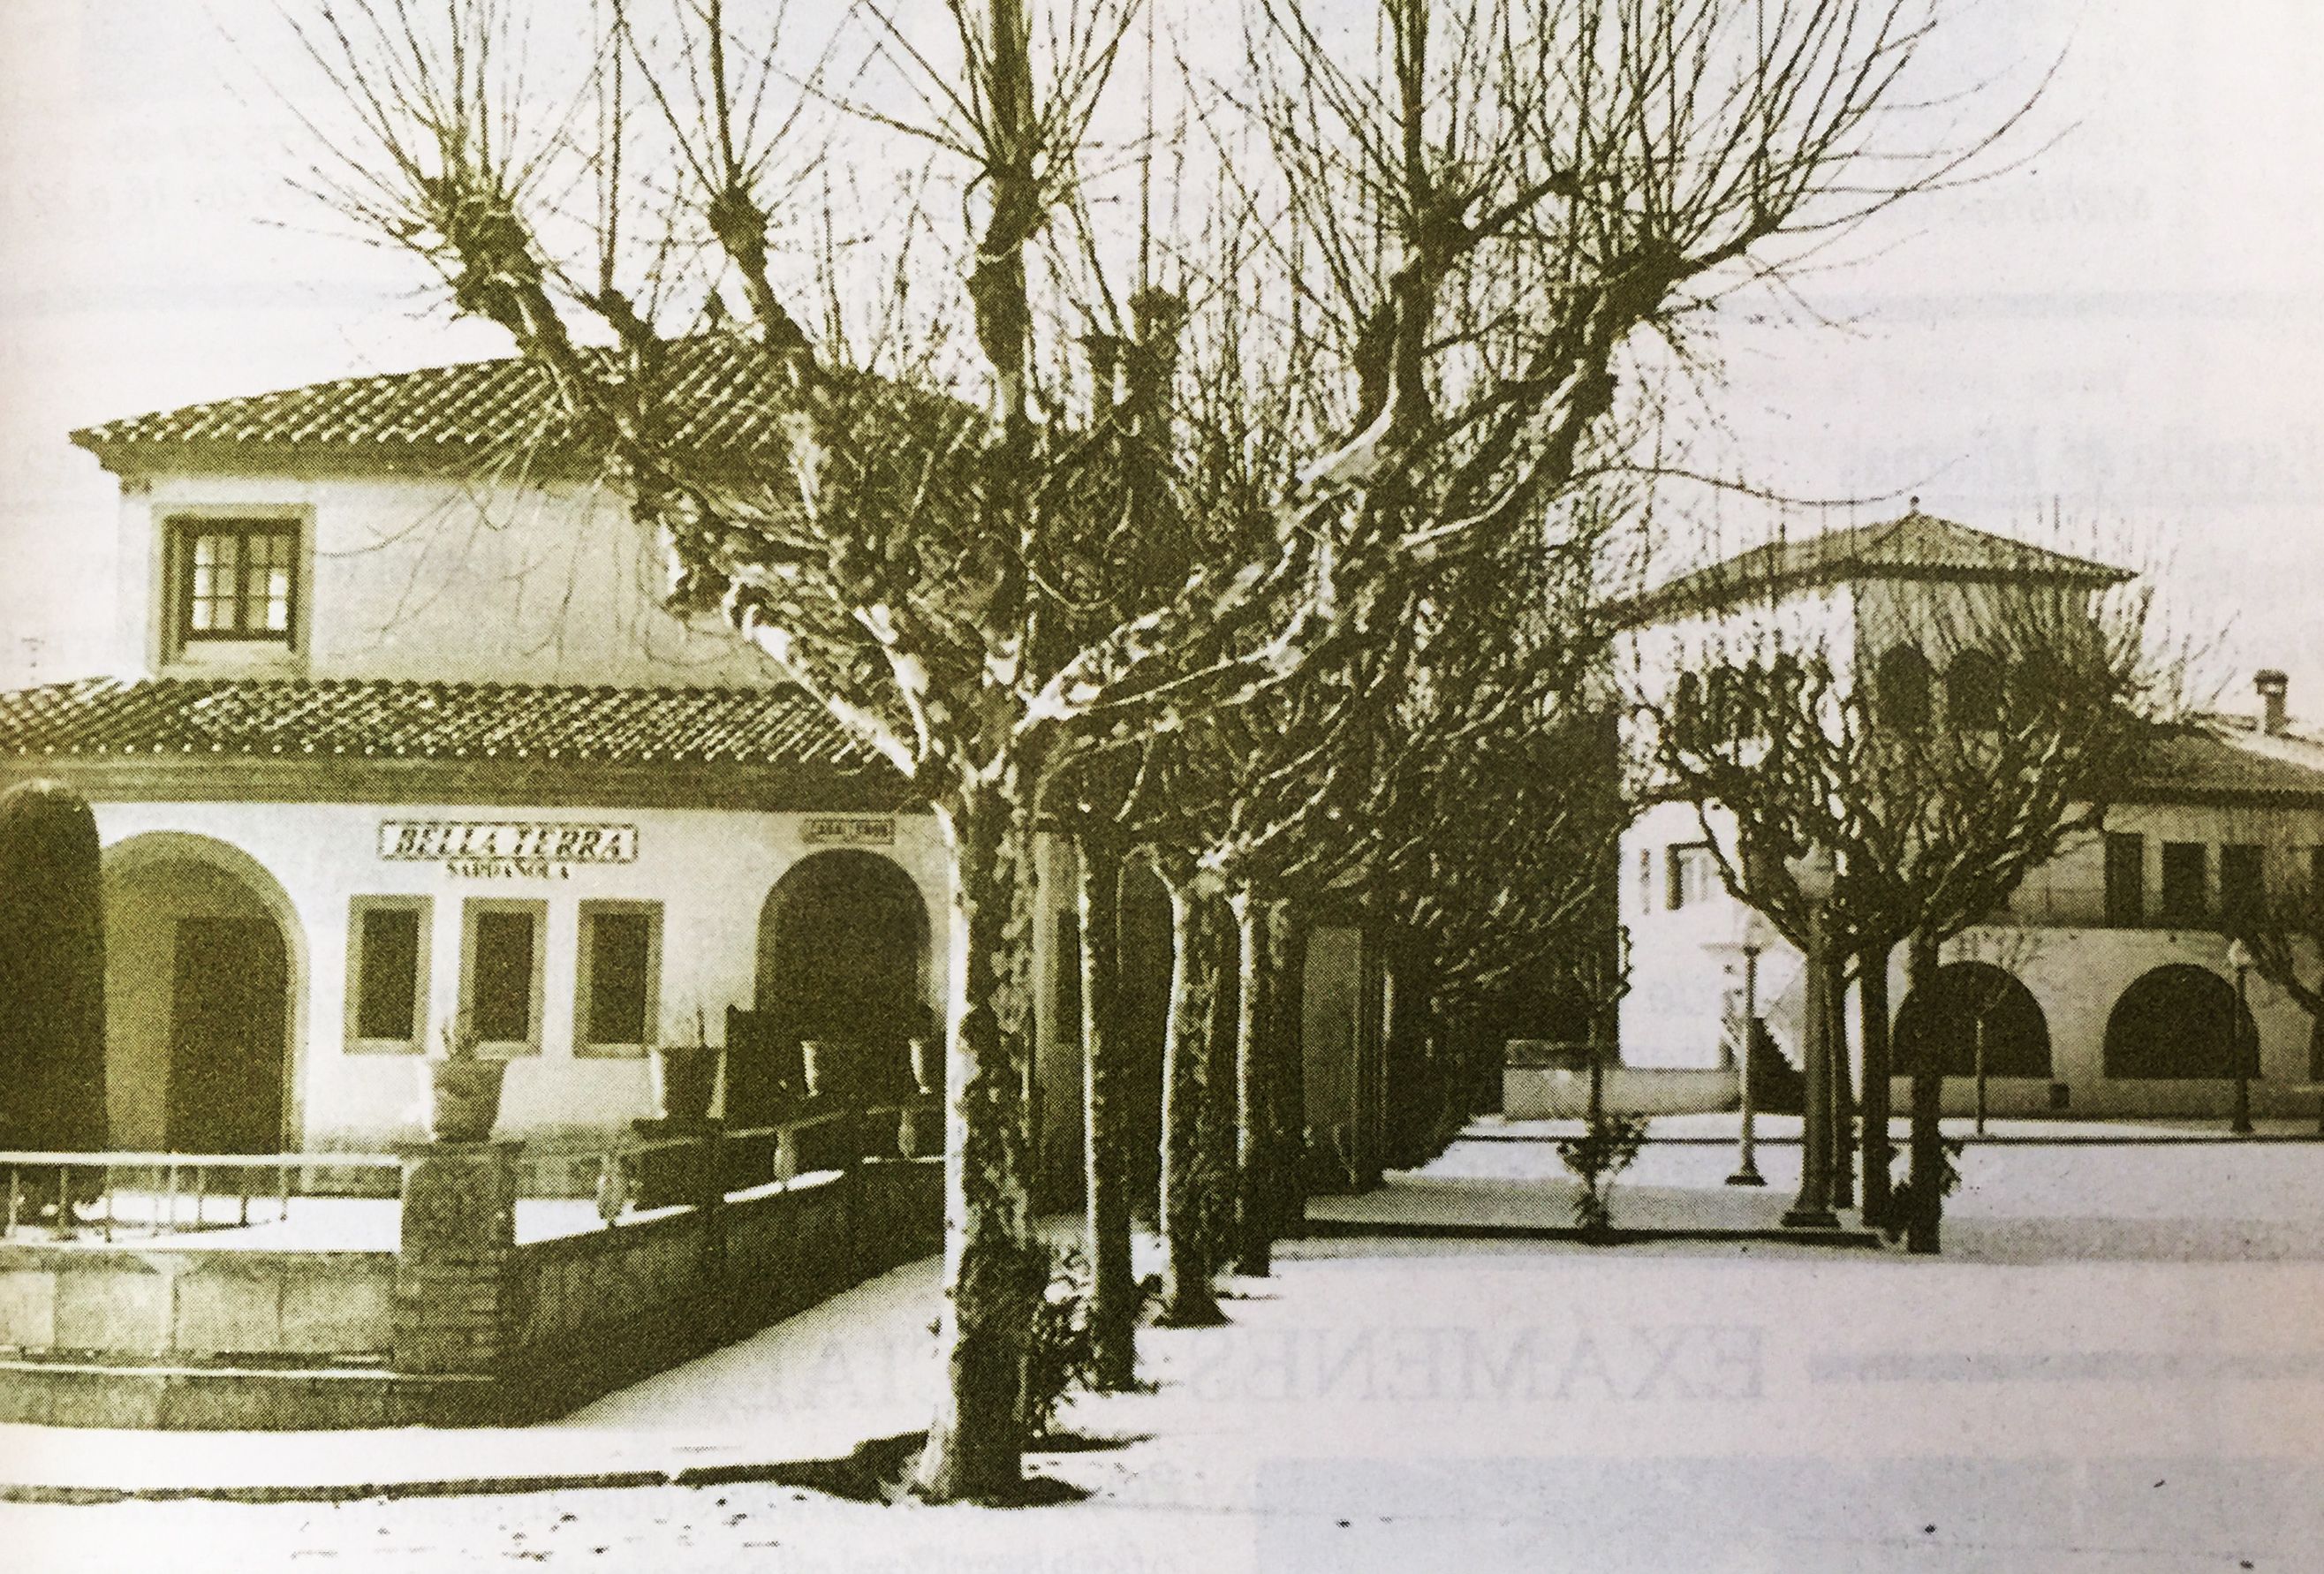 Estació de trens de Bellaterra, 1950 (Cedida per Joan Mimó i Piqué)